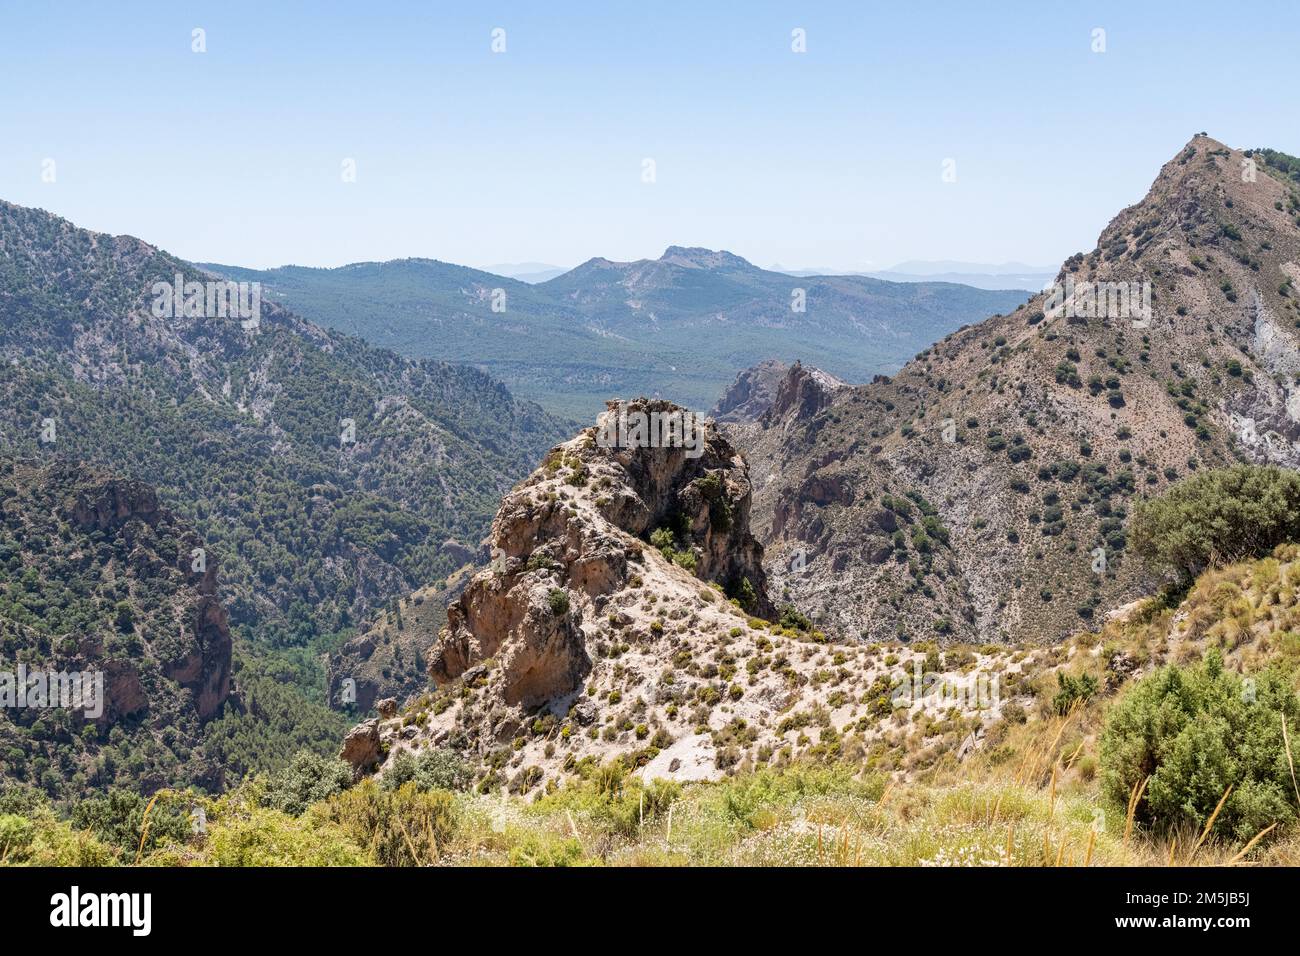 La région de randonnée de Collado Sevilla dans la chaîne de montagnes de la Sierra Nevada en Andalousie, Espagne Banque D'Images